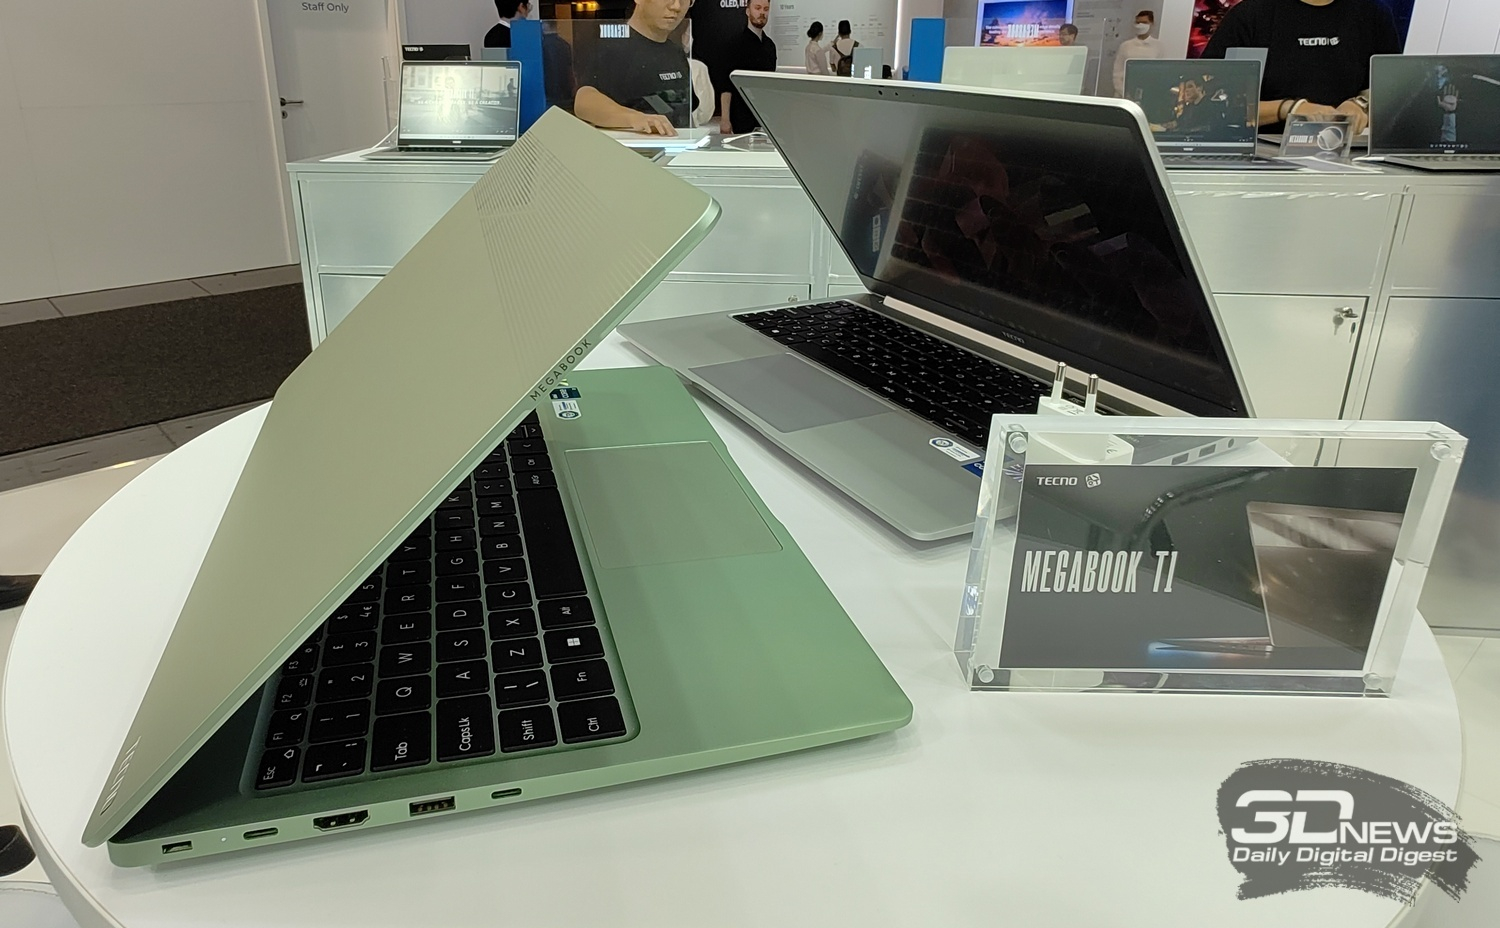 Ноутбук tecno megabook t1 i5. Ноутбук Tecno MEGABOOK t1 зеленый. Techno MEGABOOK t1. Ноутбук Техно Мегабук. 15.6" Ноутбук Tecno MEGABOOK t1 зеленый.